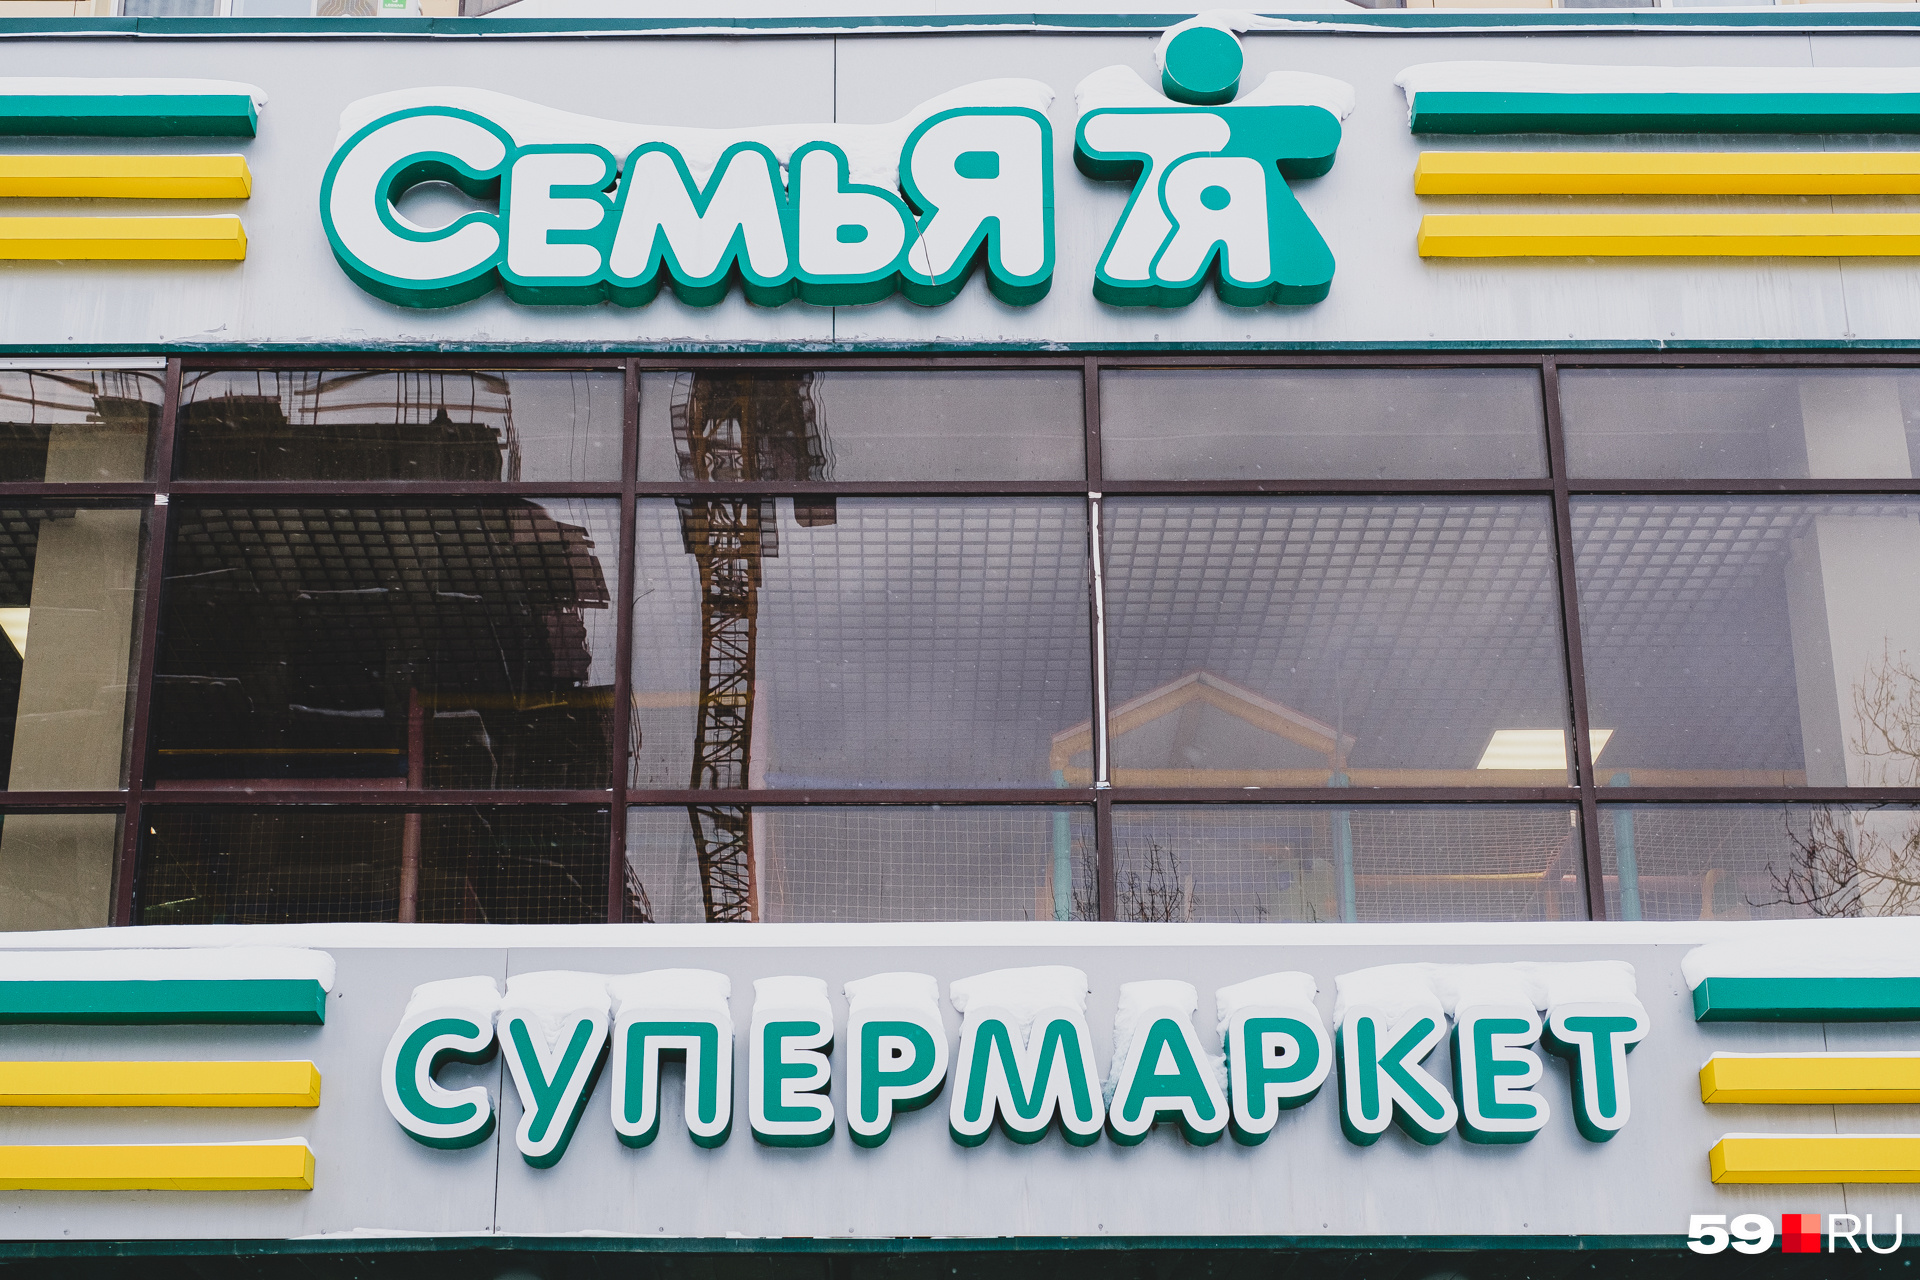 Название и логотип сети придумал пермский ресторатор Олег Ощепков — в начале нулевых у него было свое рекламное агентство